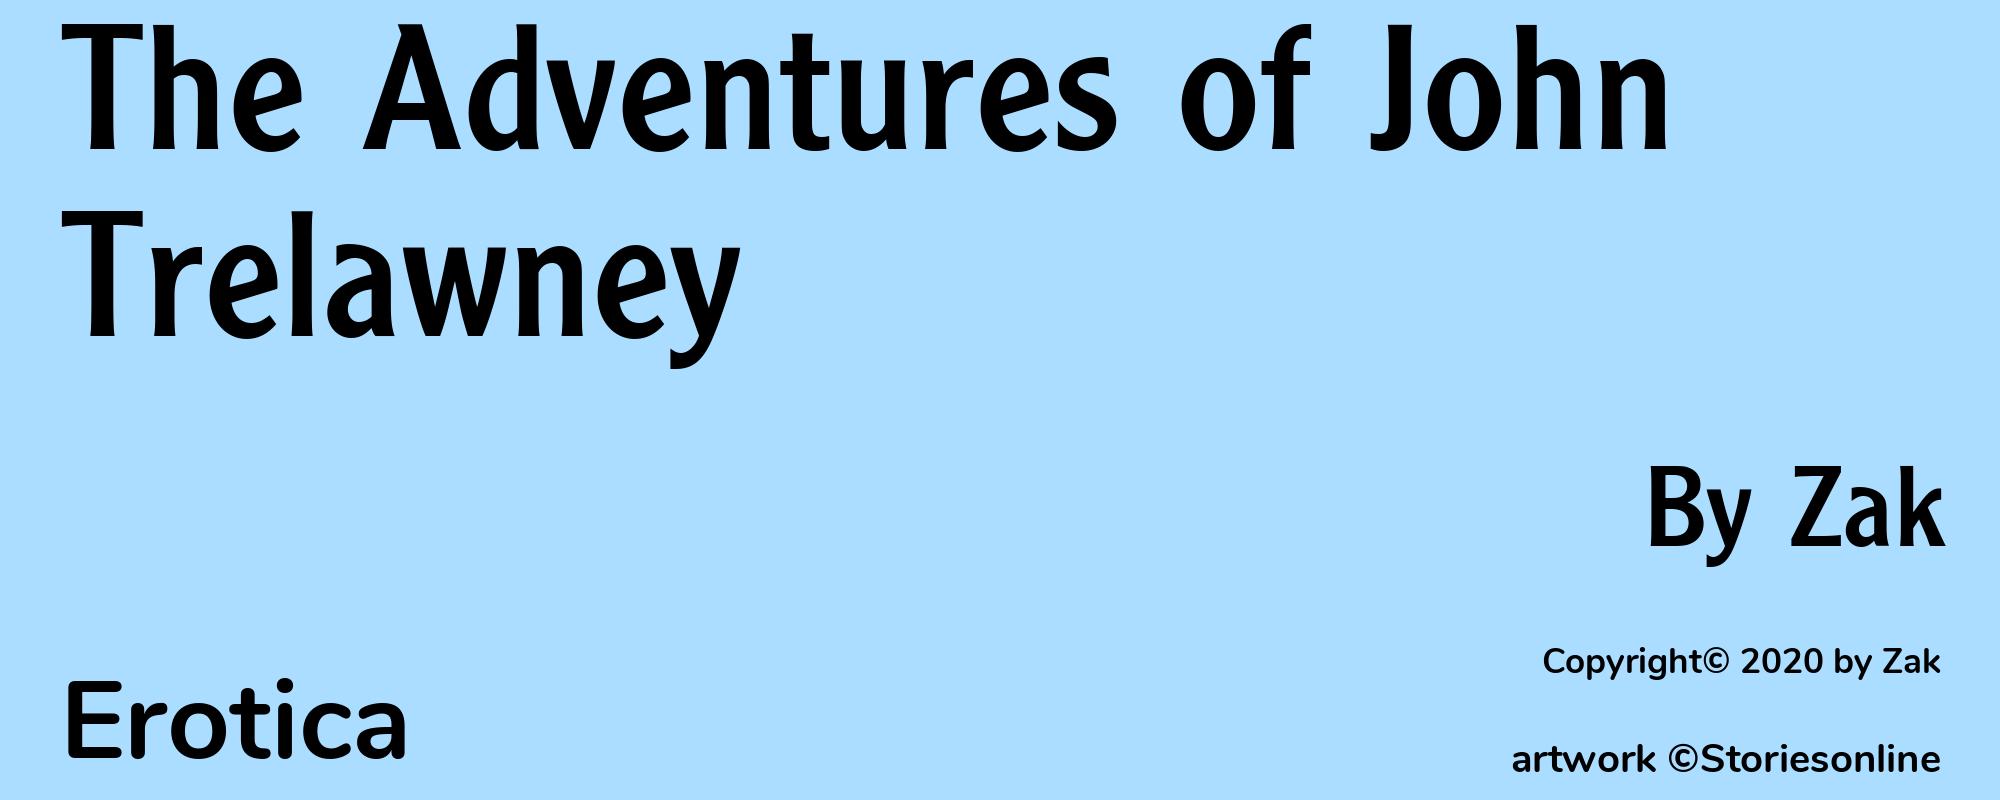 The Adventures of John Trelawney - Cover